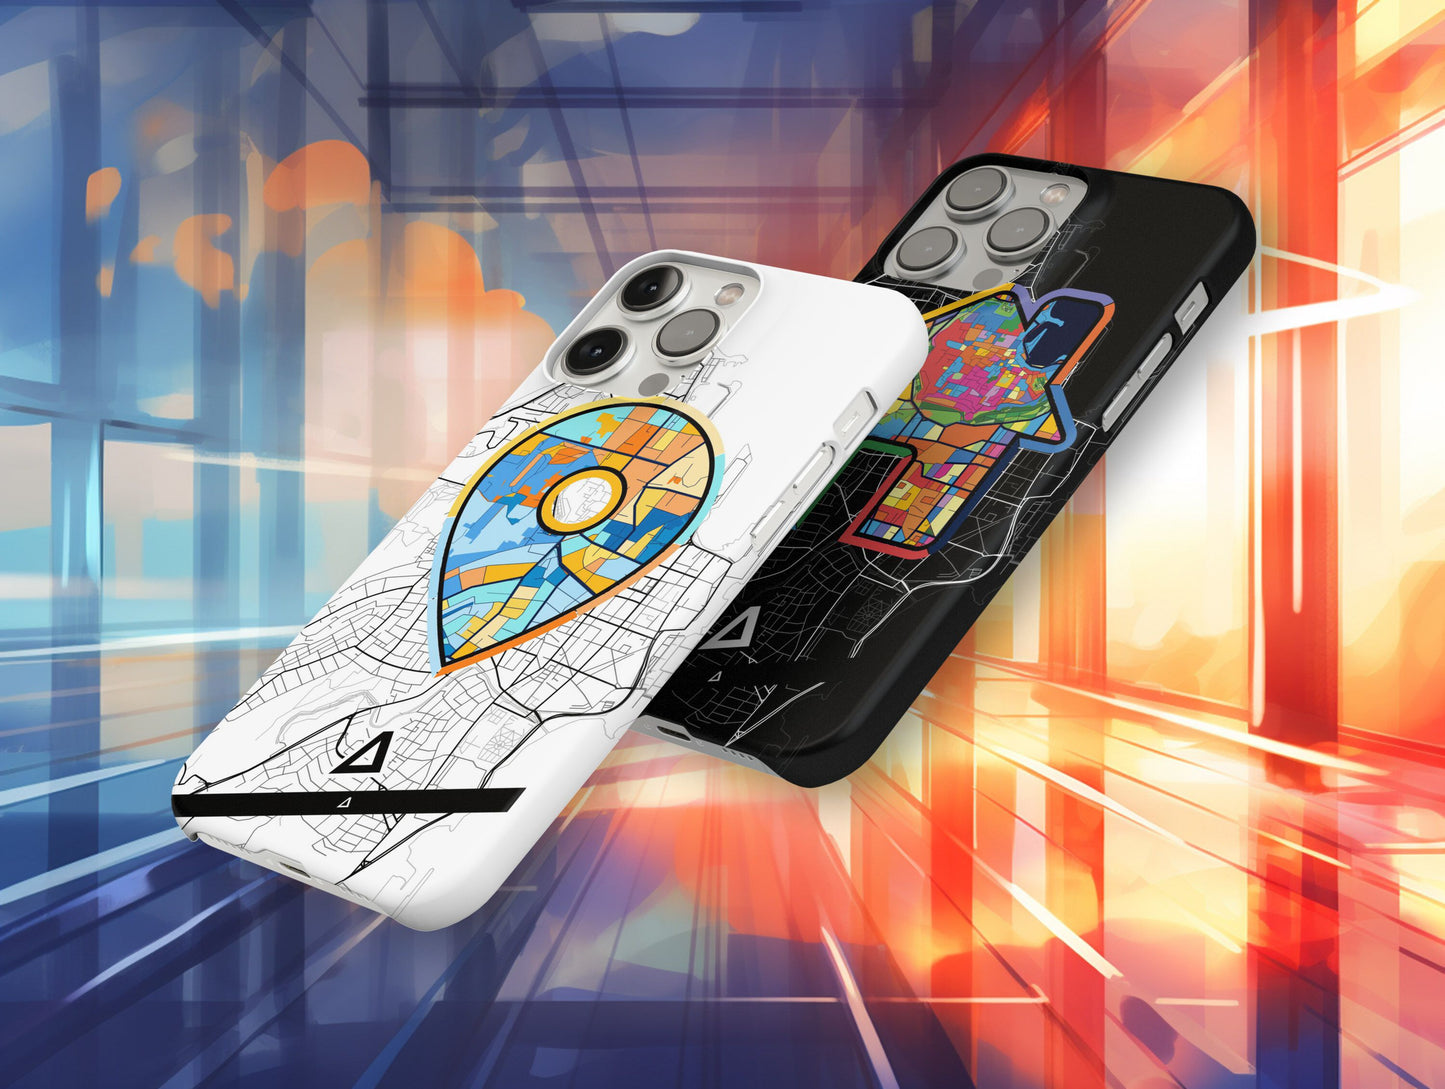 Ροδος Ελλαδα slim phone case with colorful icon